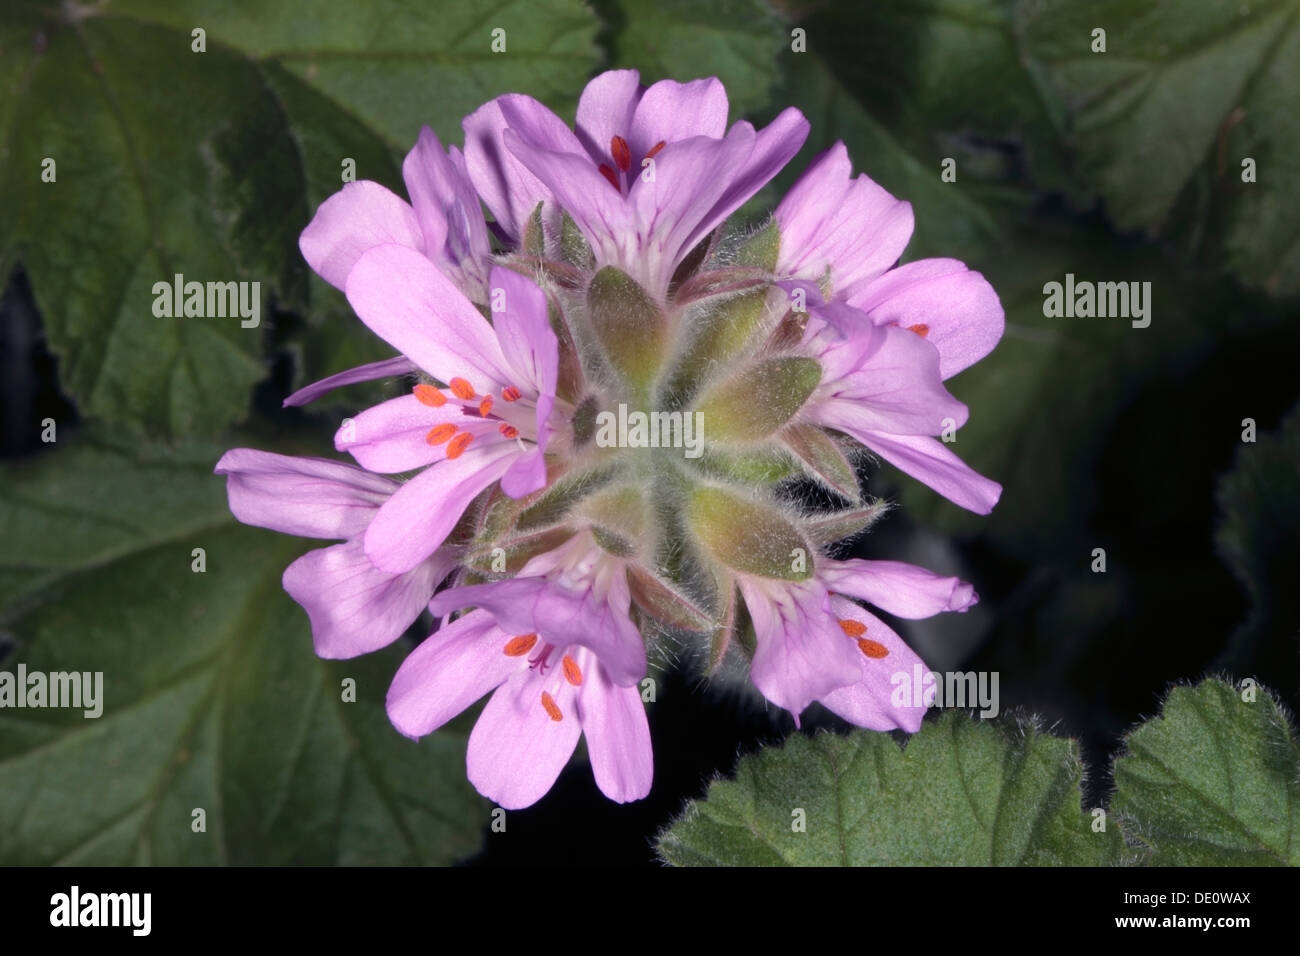 Close-up of Geranium / Pelargonium Flowers - Family Geraniaceae Stock Photo